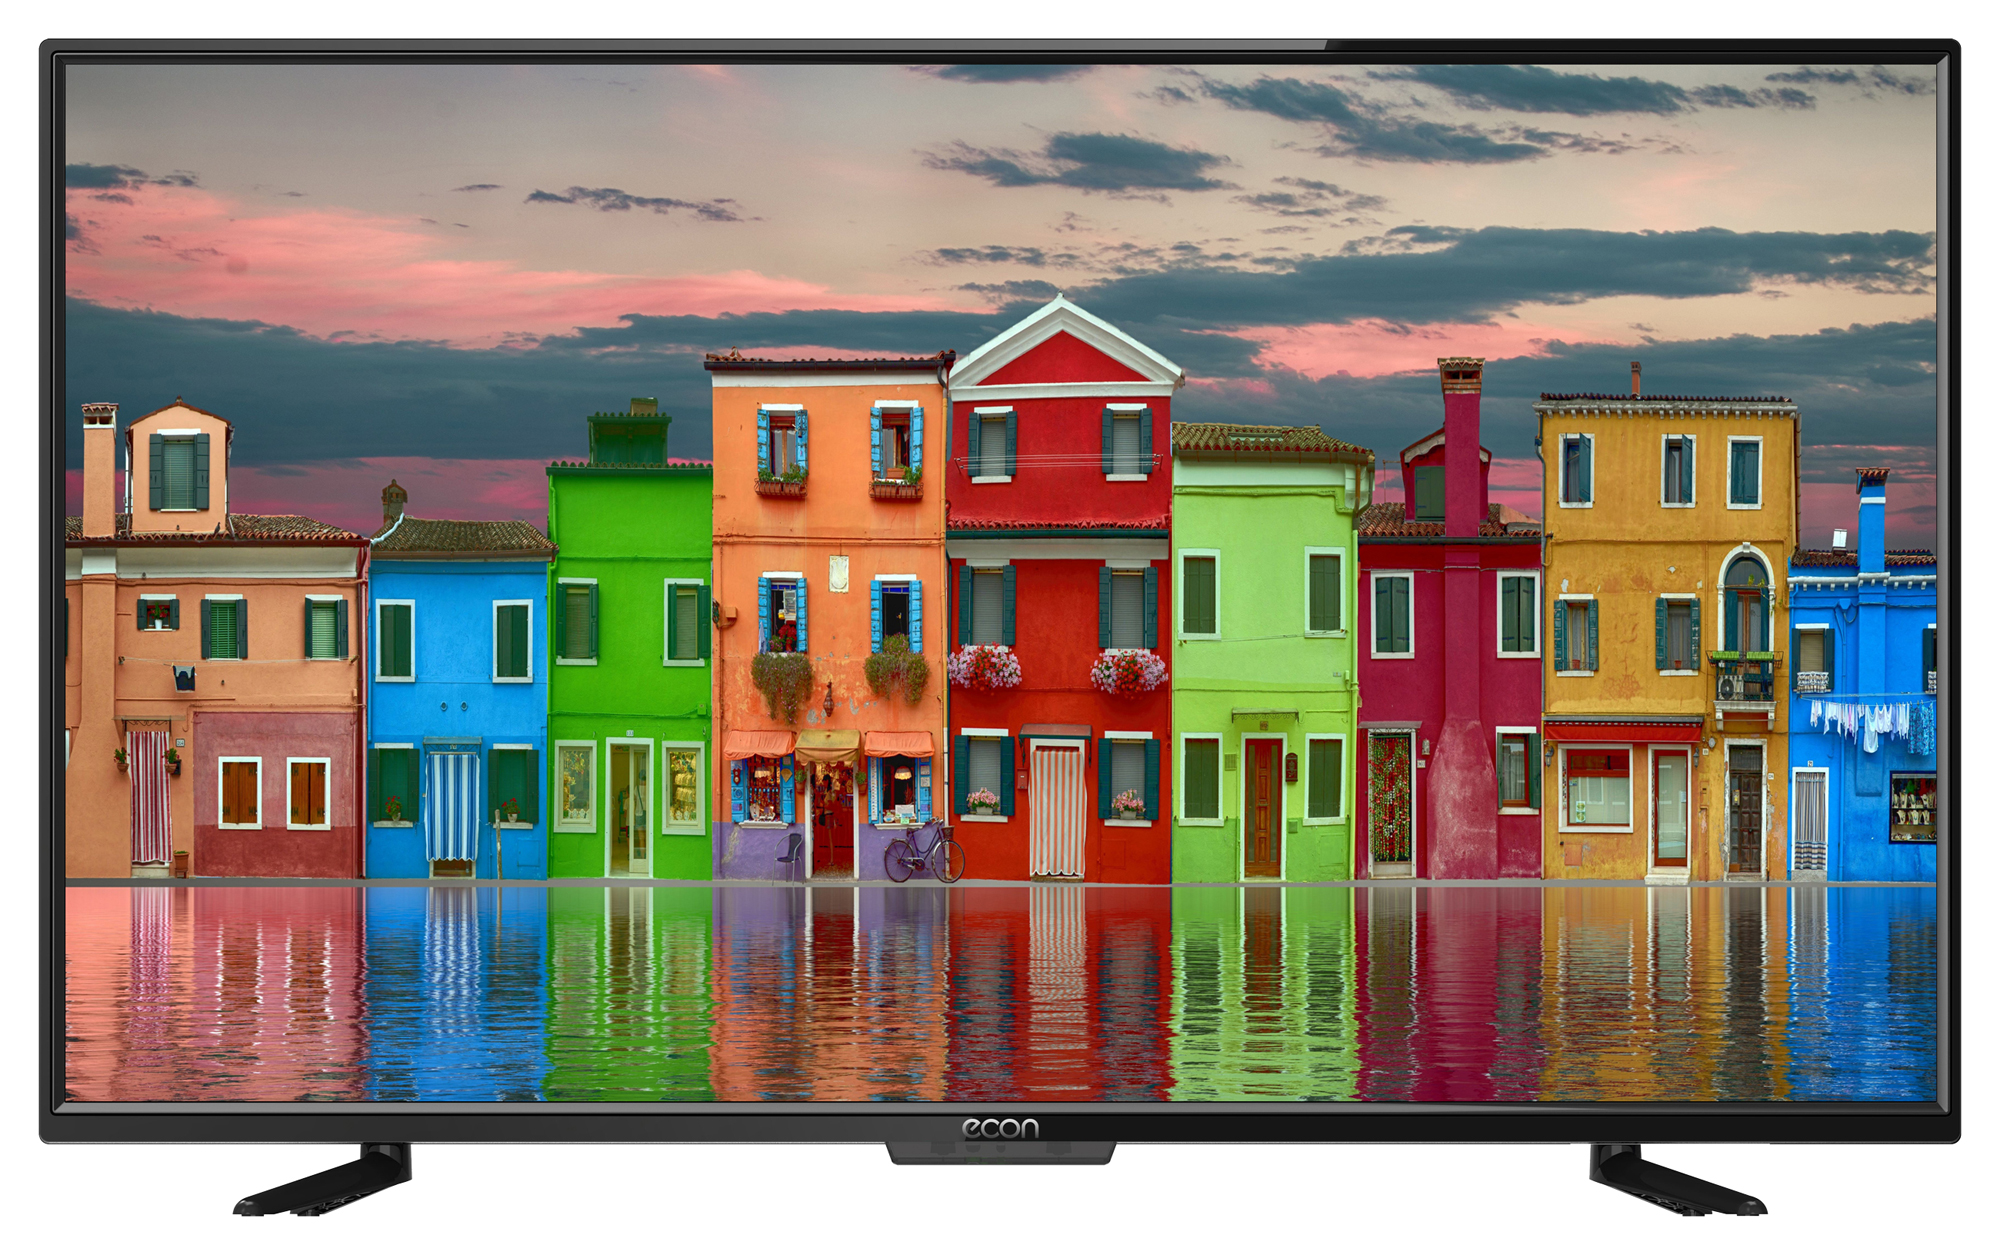 Картинка Smart телевизор ECON EX-39HS004B по разумной цене купить в интернет магазине mall.su